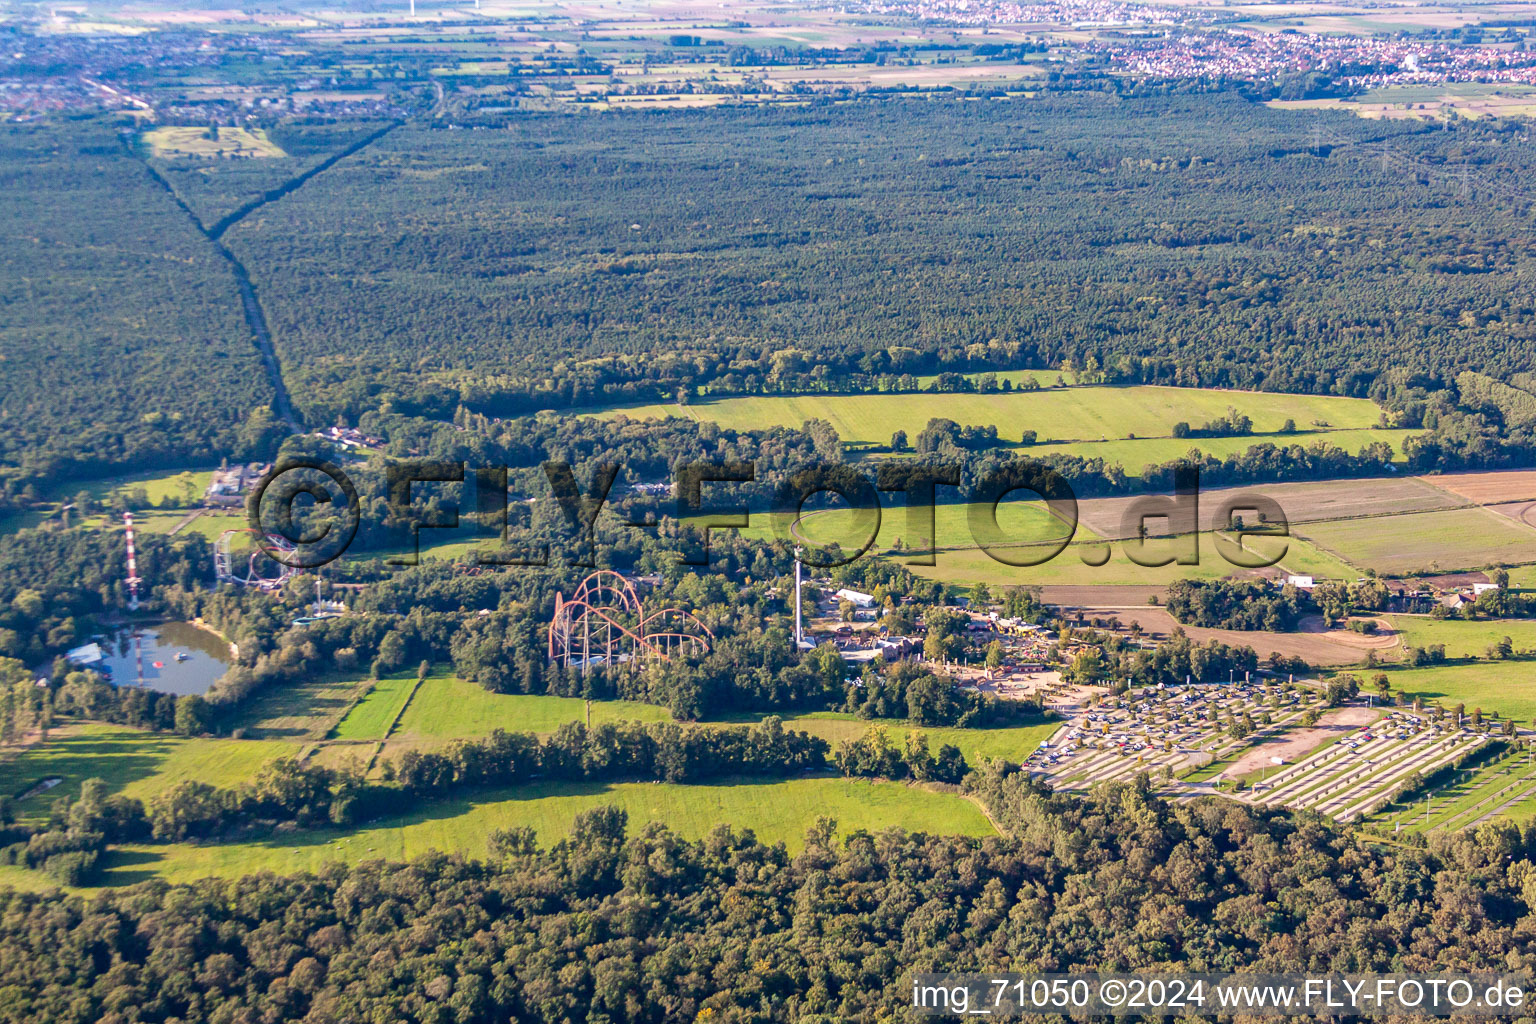 Holiday-Park in Haßloch im Bundesland Rheinland-Pfalz, Deutschland aus der Drohnenperspektive